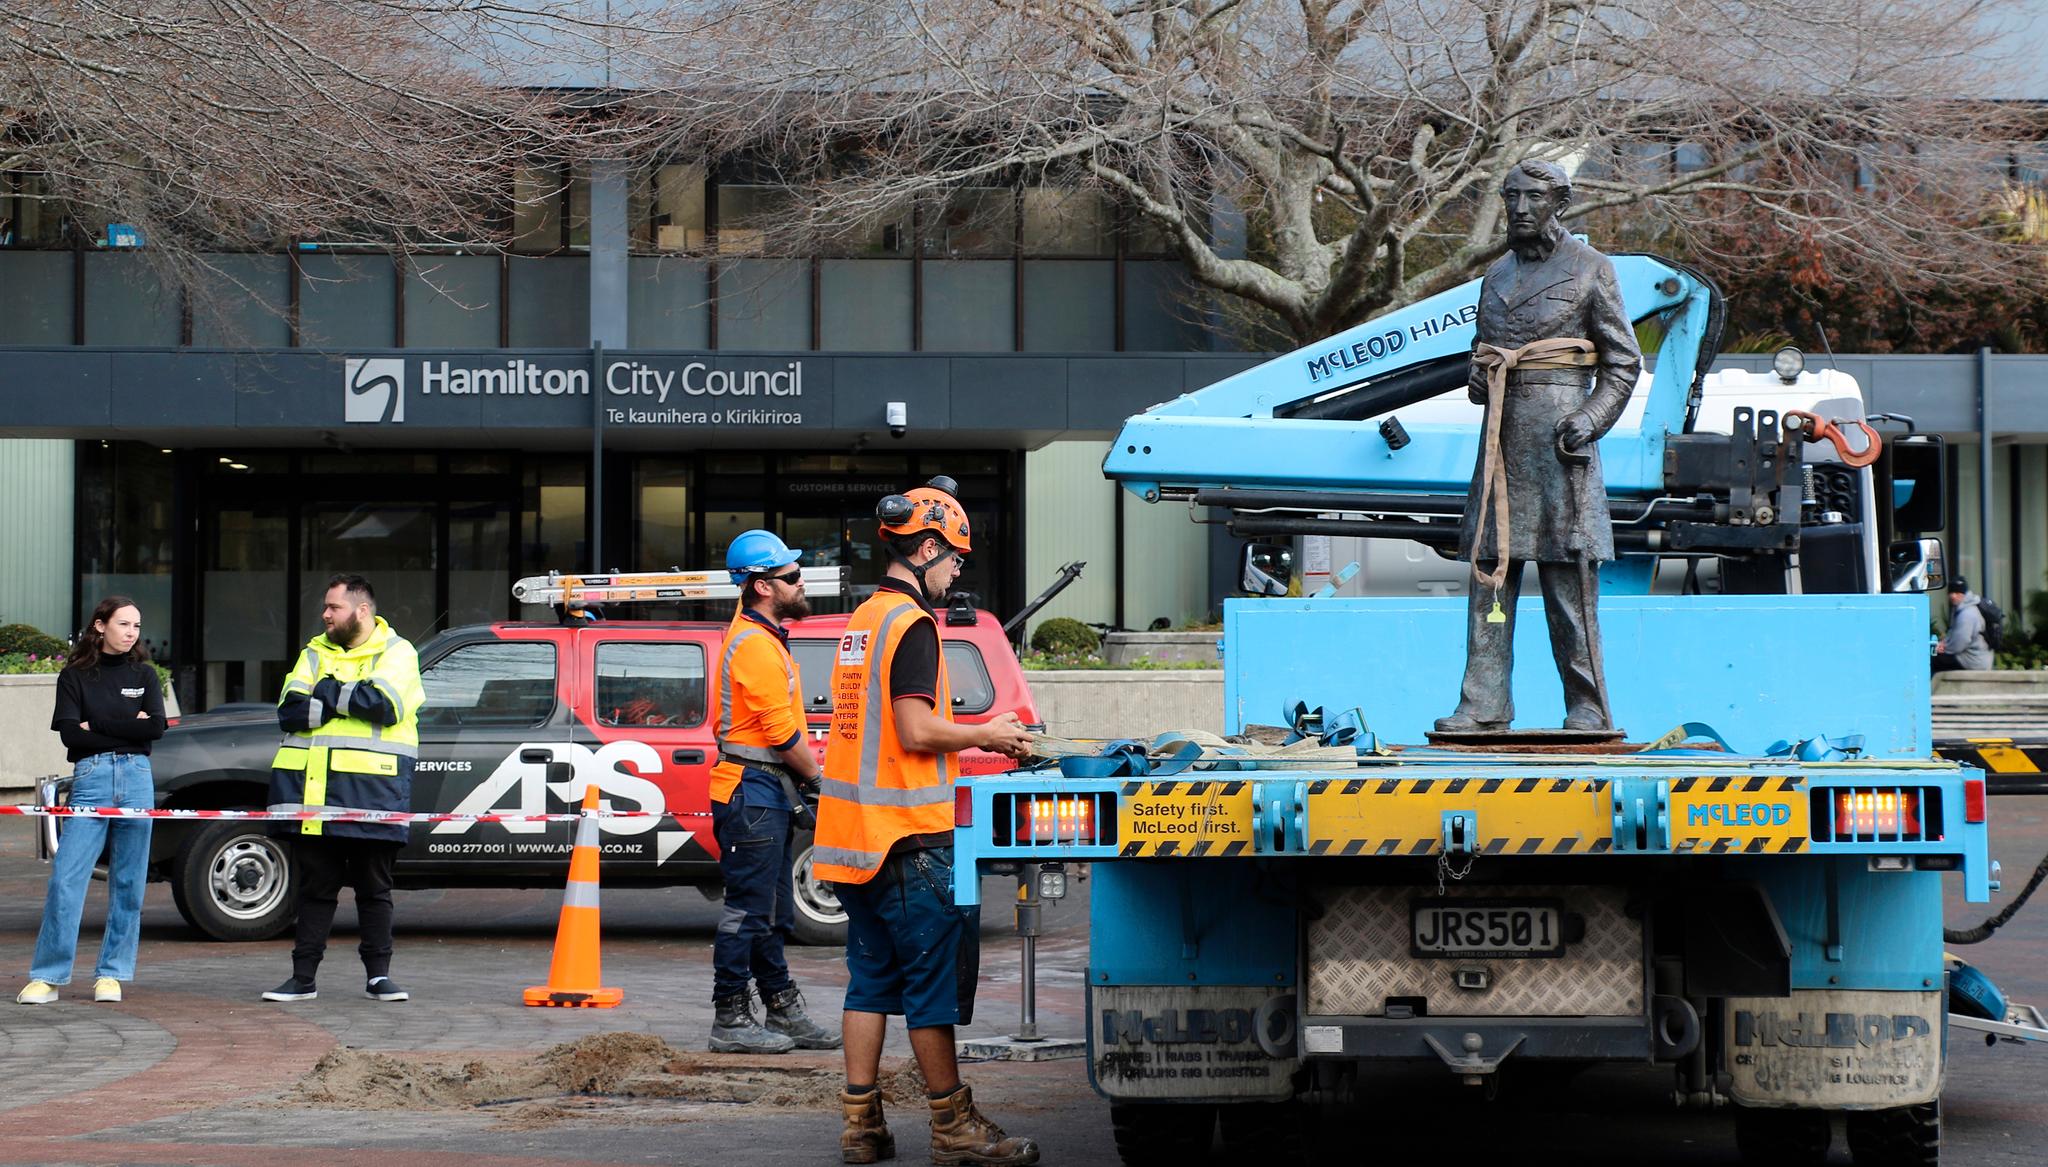 Bystyret i Hamilton stemte for å fjerne statuen av kolonisten John Fane Charles Hamilton som nedkjempet maorier på New Zealand da han koloniserte deler av landet på 1800-tallet. 